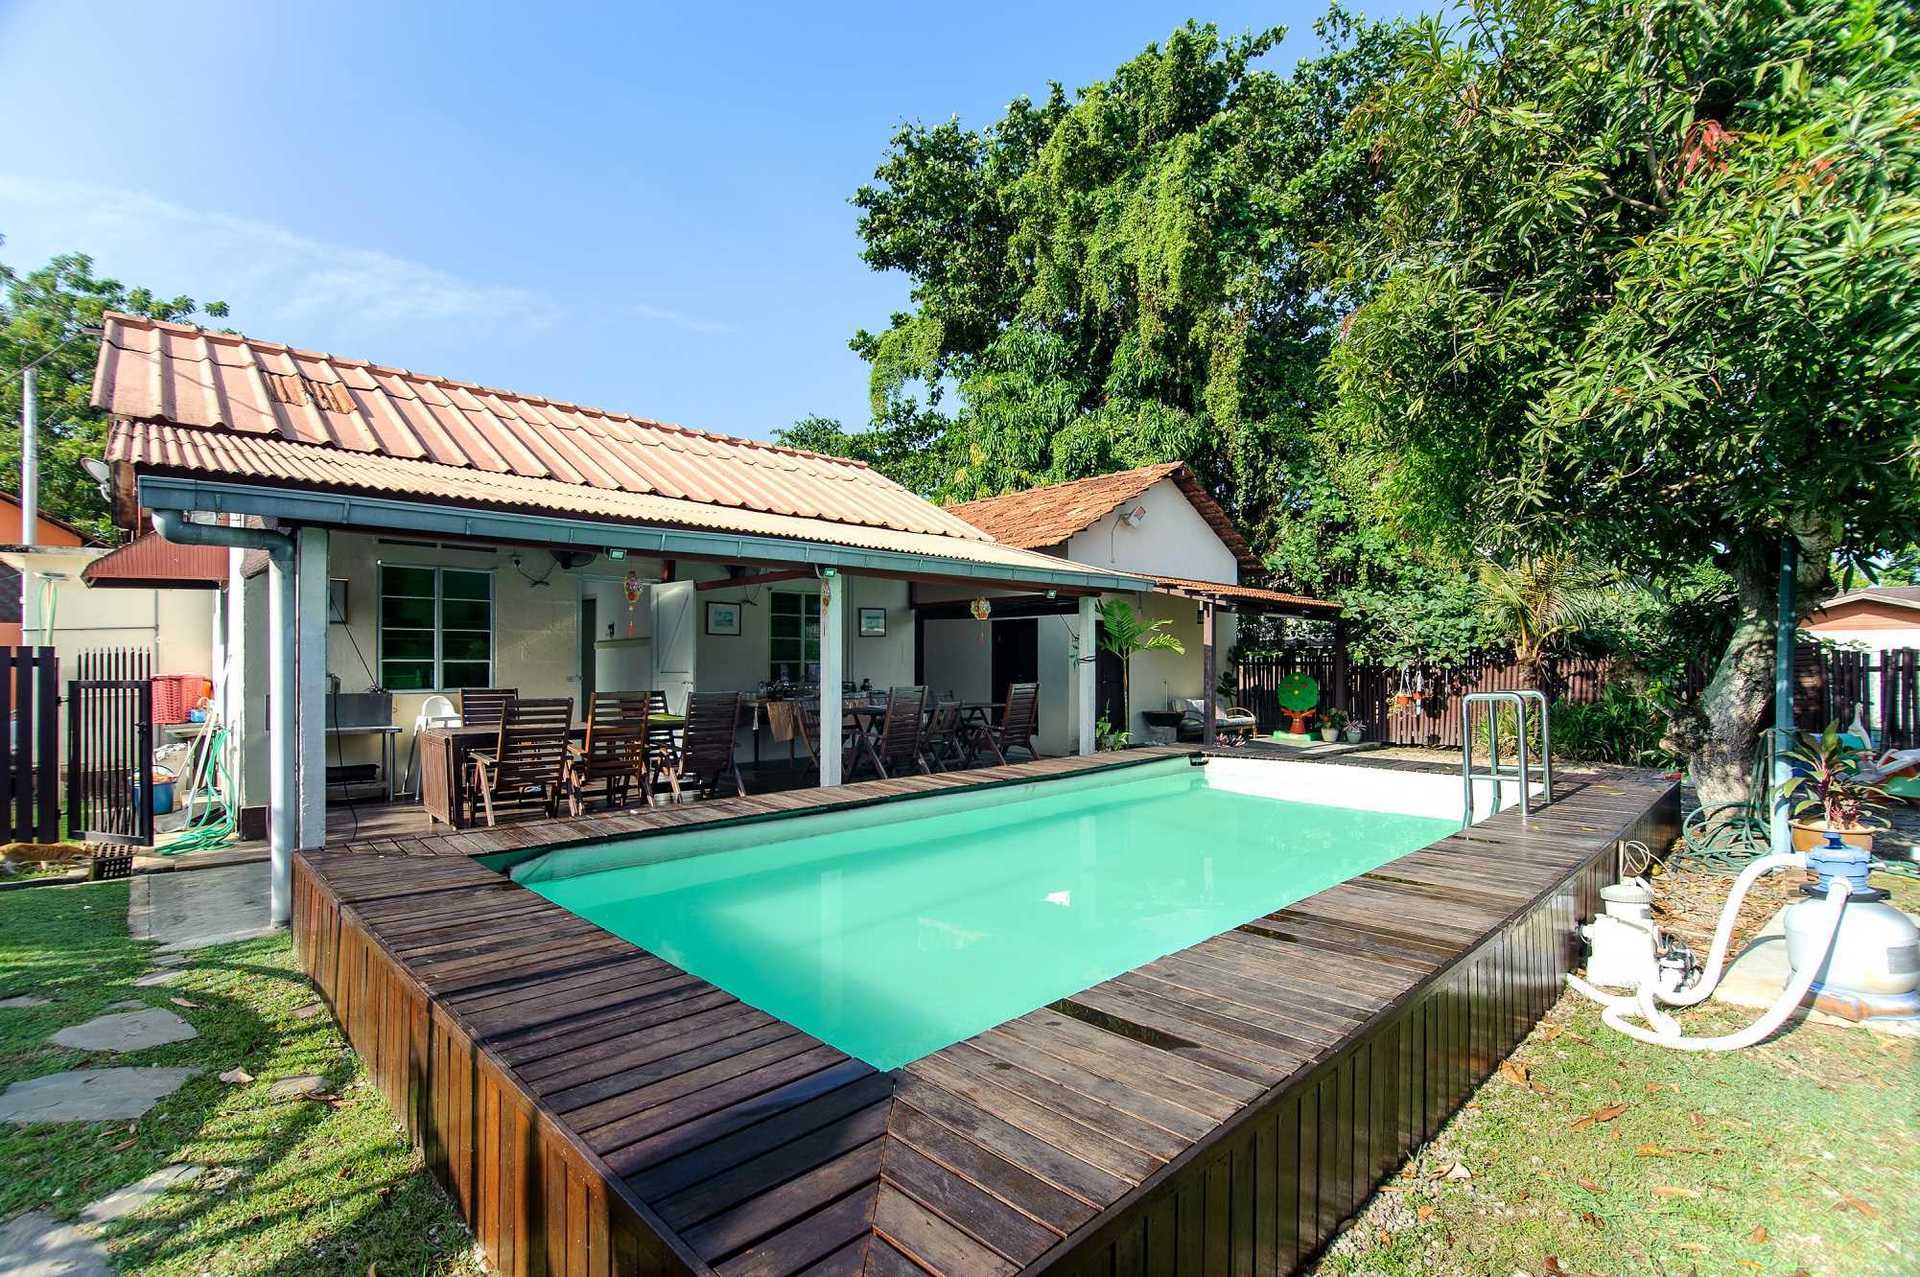 Hotel Penang Private Pool / The Prestige Hotel Penang, Penang - 2019 Updated Price ... / Aku pegi lexis suite penang yang ada private pool setiap bilik !!